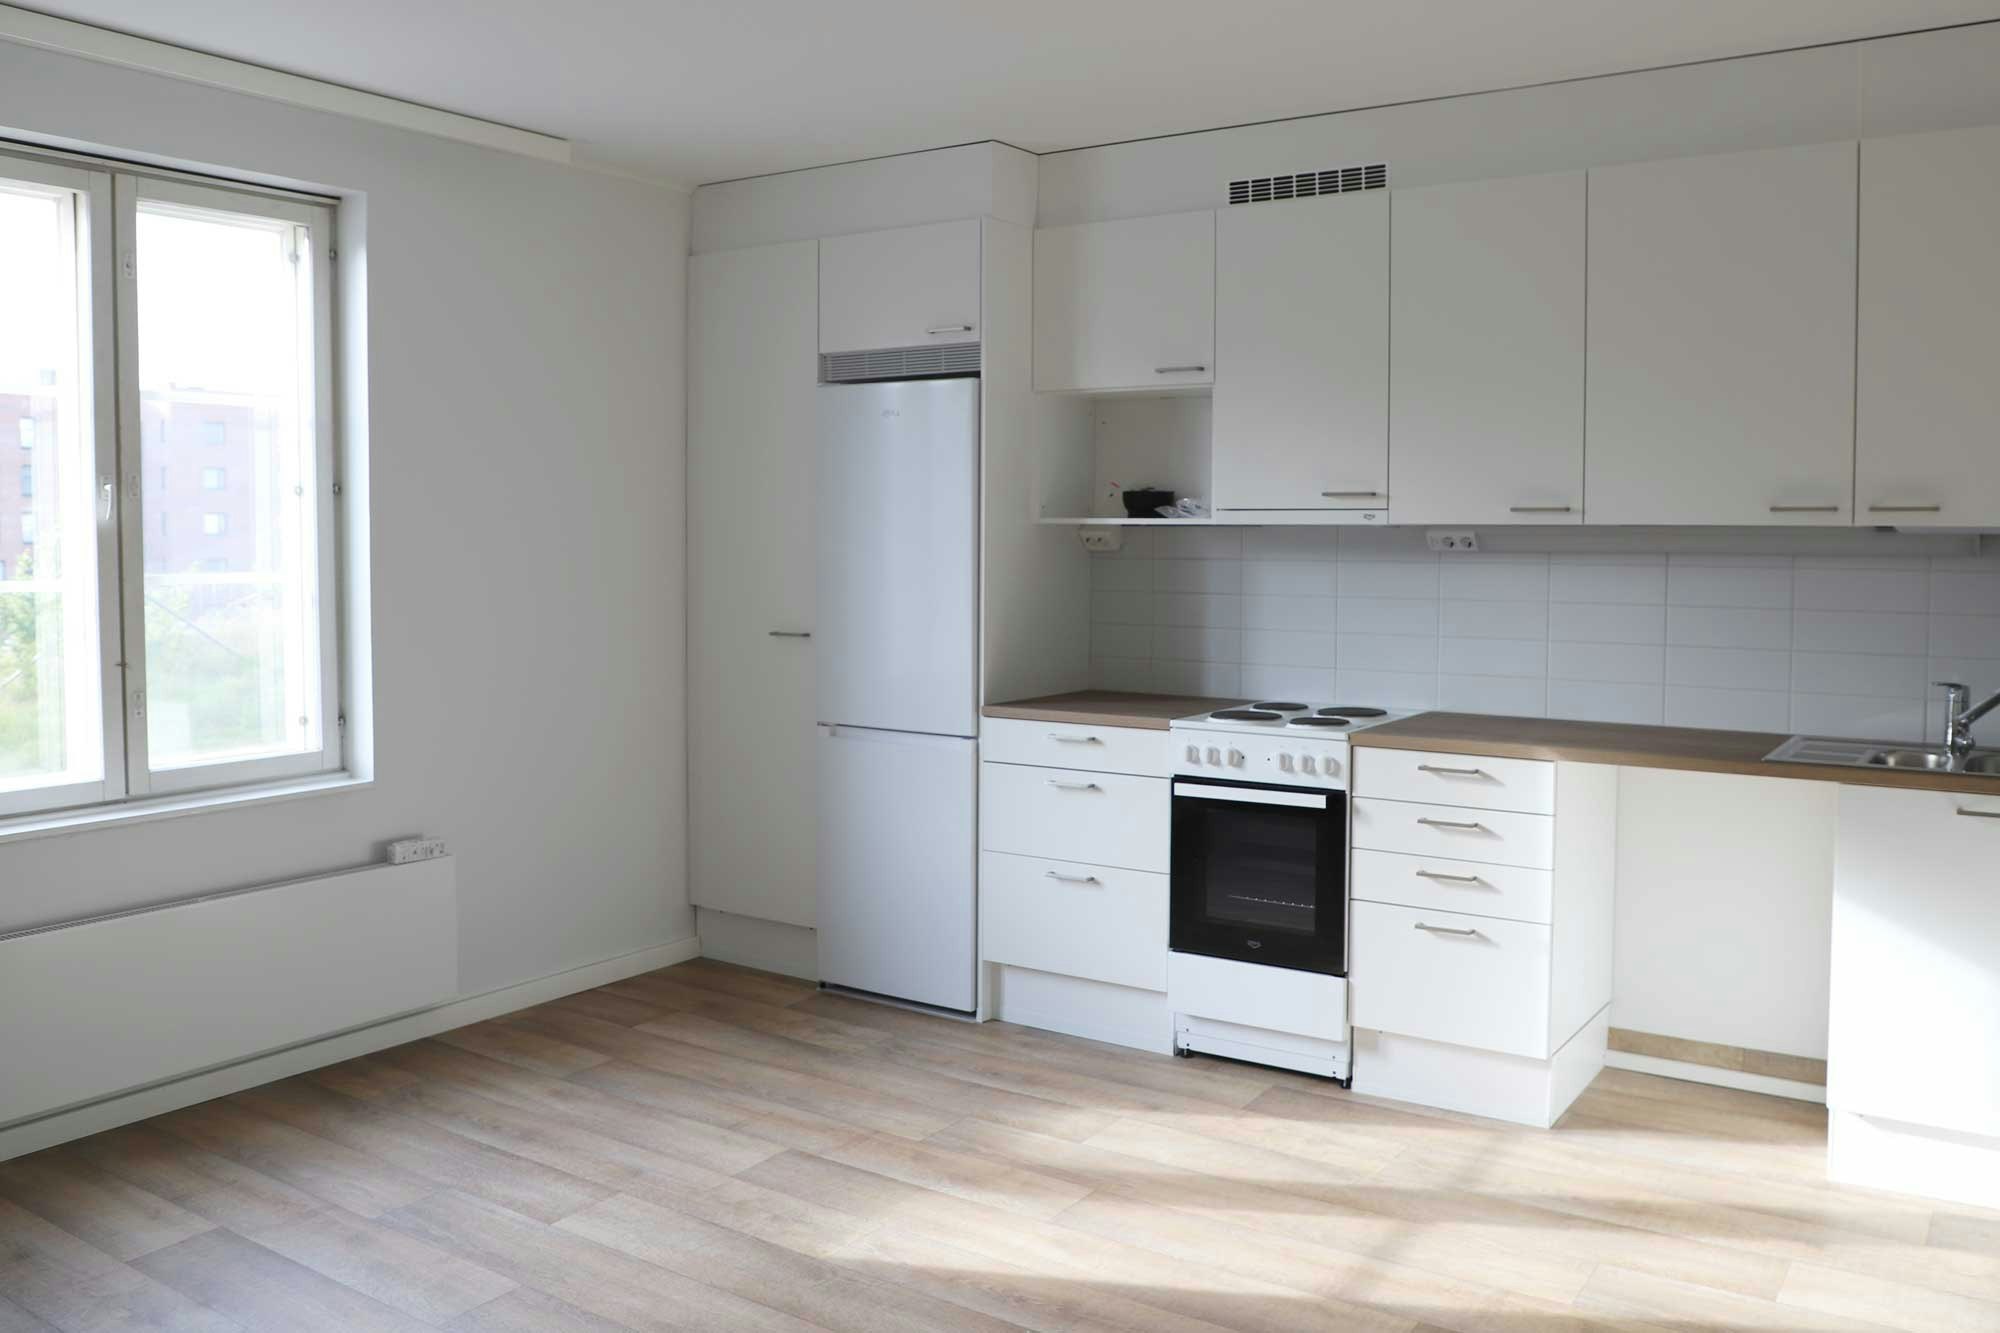 Köydenpunojankatu 5:n asuntojen keittiö-olohuonetila saa remontissa modernin ilmeen. Kaikki pinnat ja keittiökoneet uusitaan.